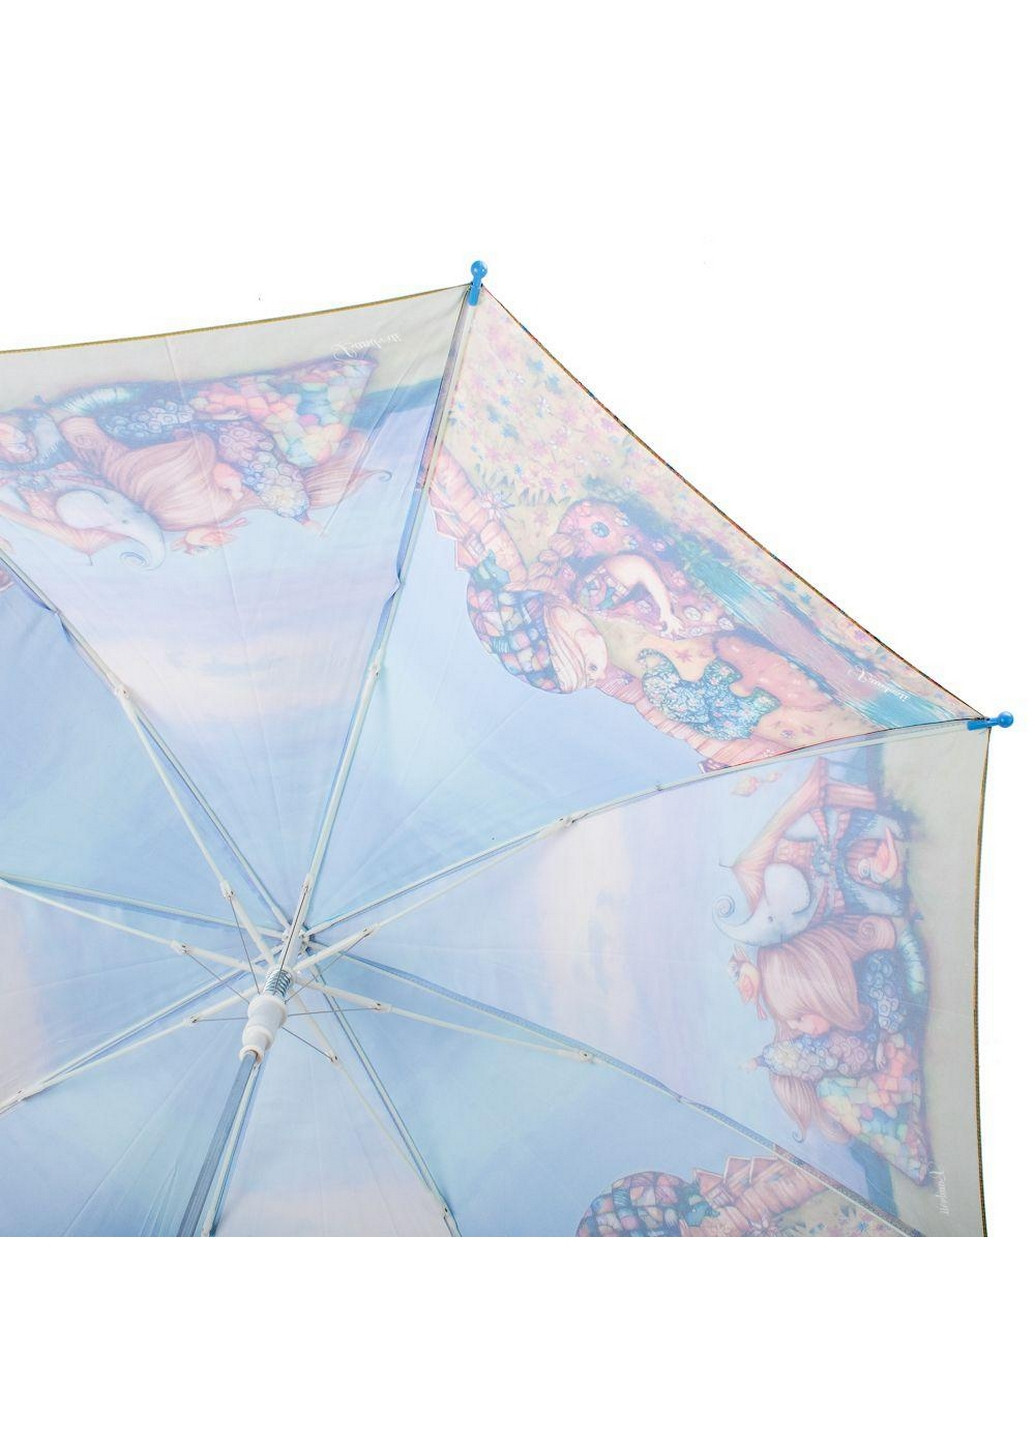 Зонт-трость детский полуавтомат 91 см Lamberti (260285887)